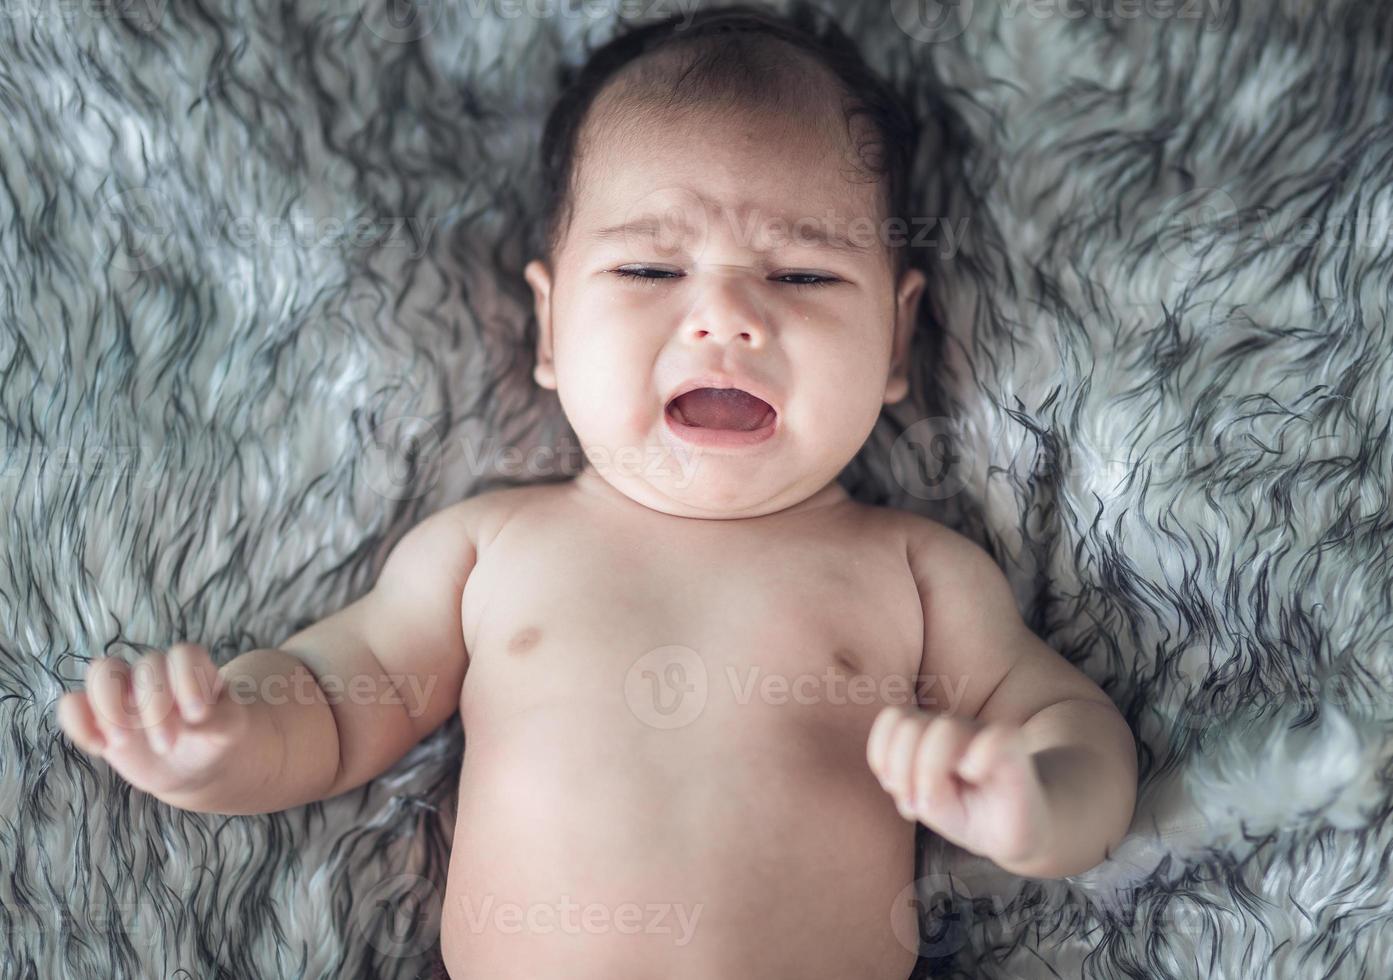 Babymädchen weint in einem Wickel foto